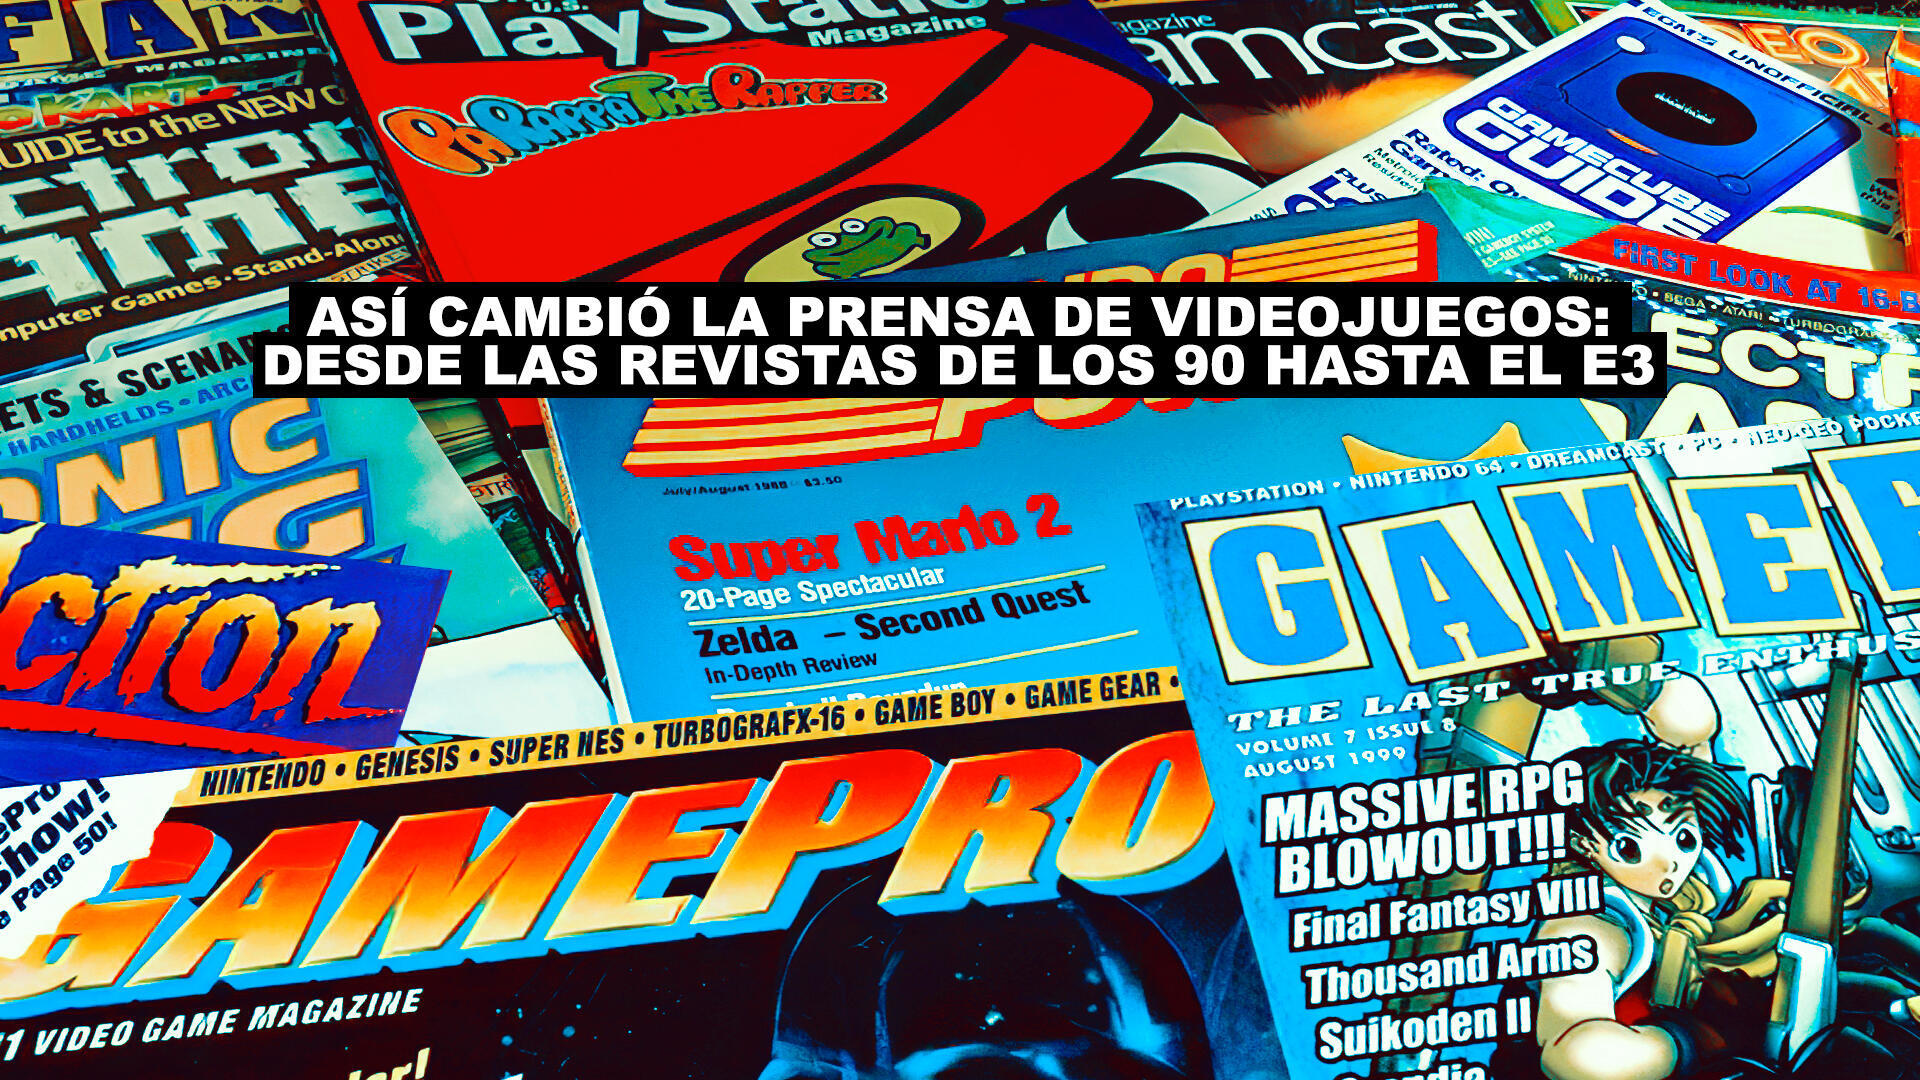 As cambi la prensa de videojuegos: desde las revistas de los 90 hasta el E3